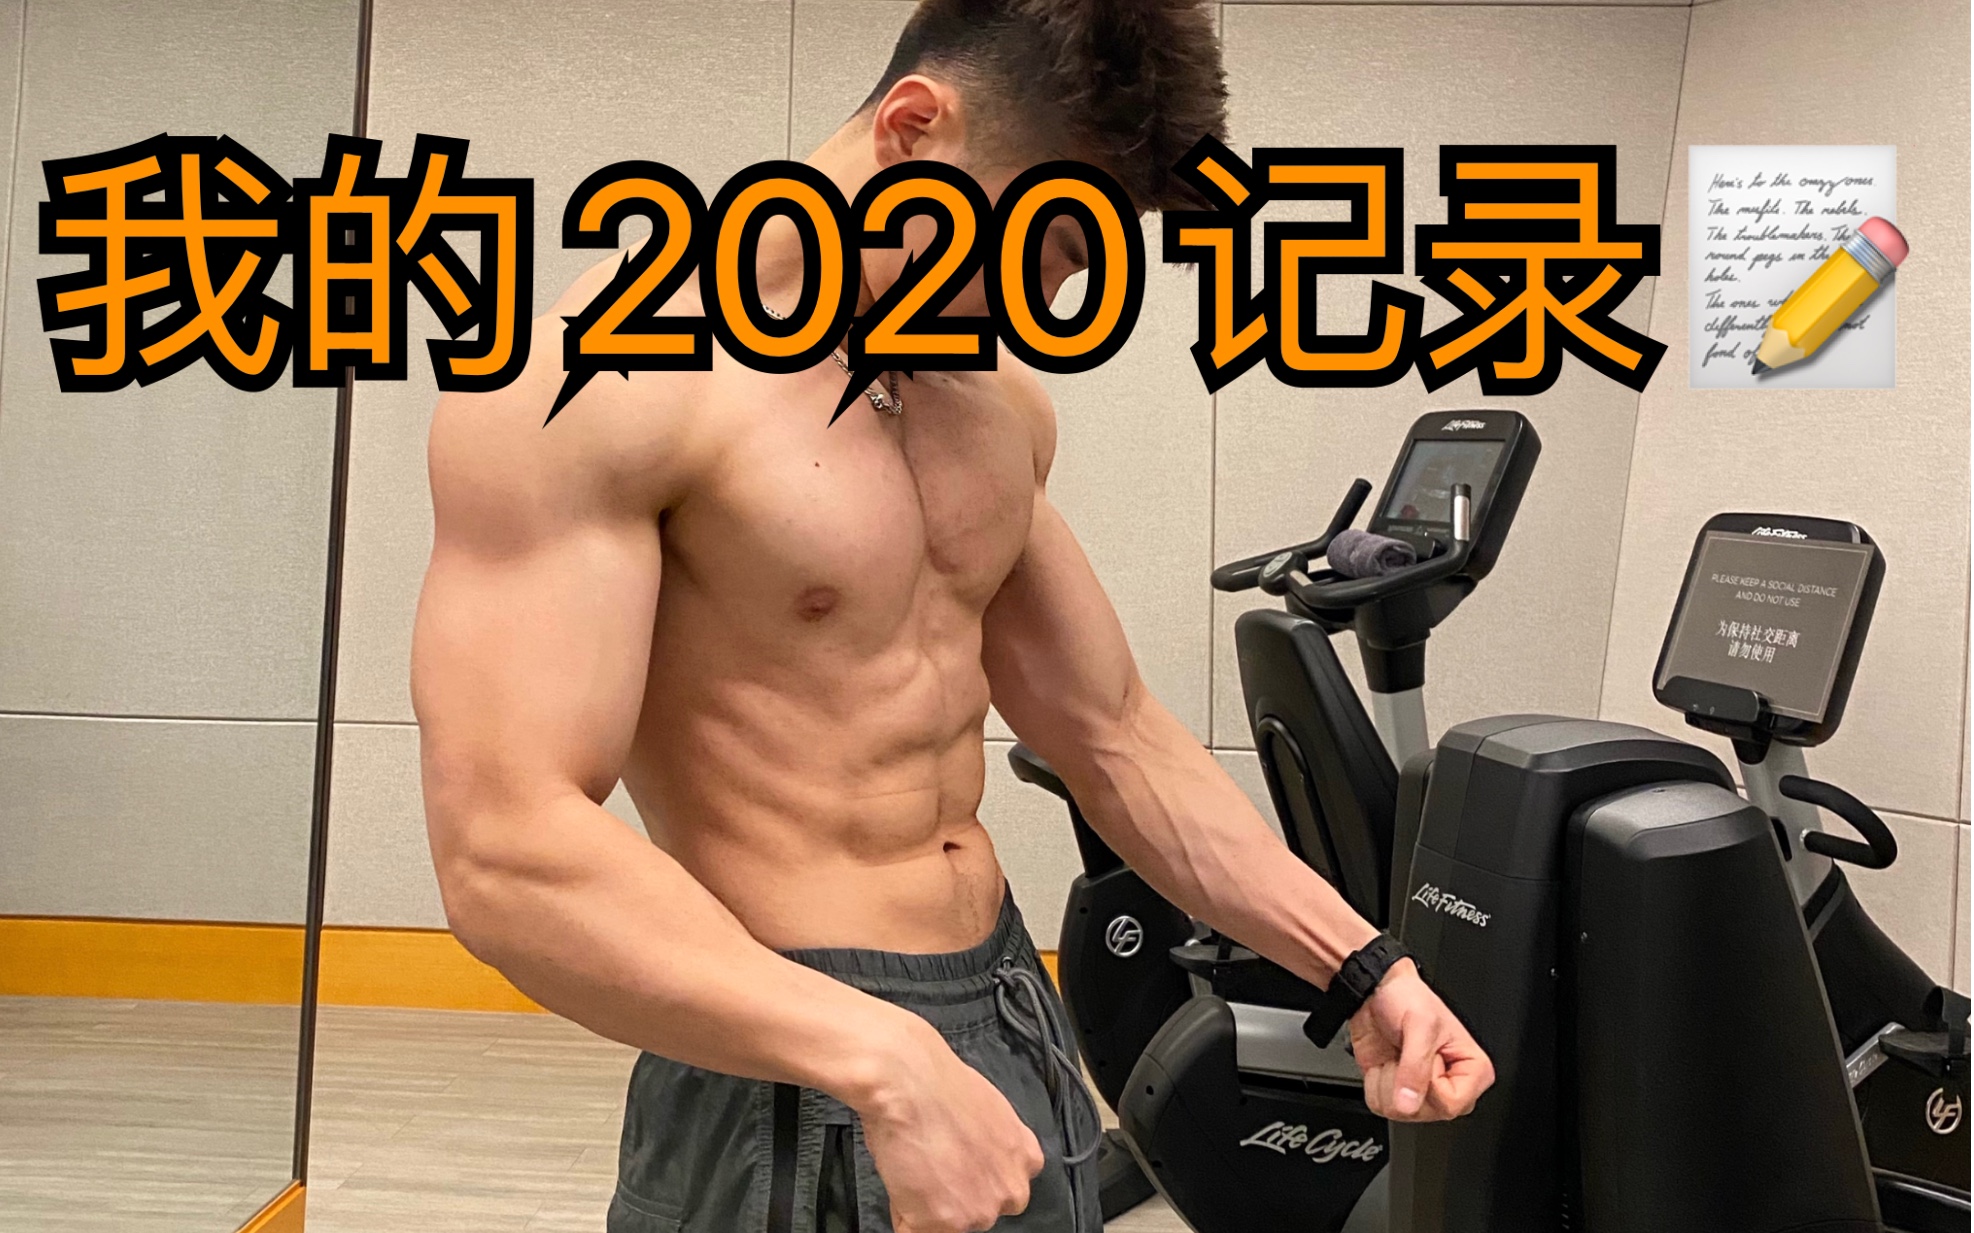 2020健身记录